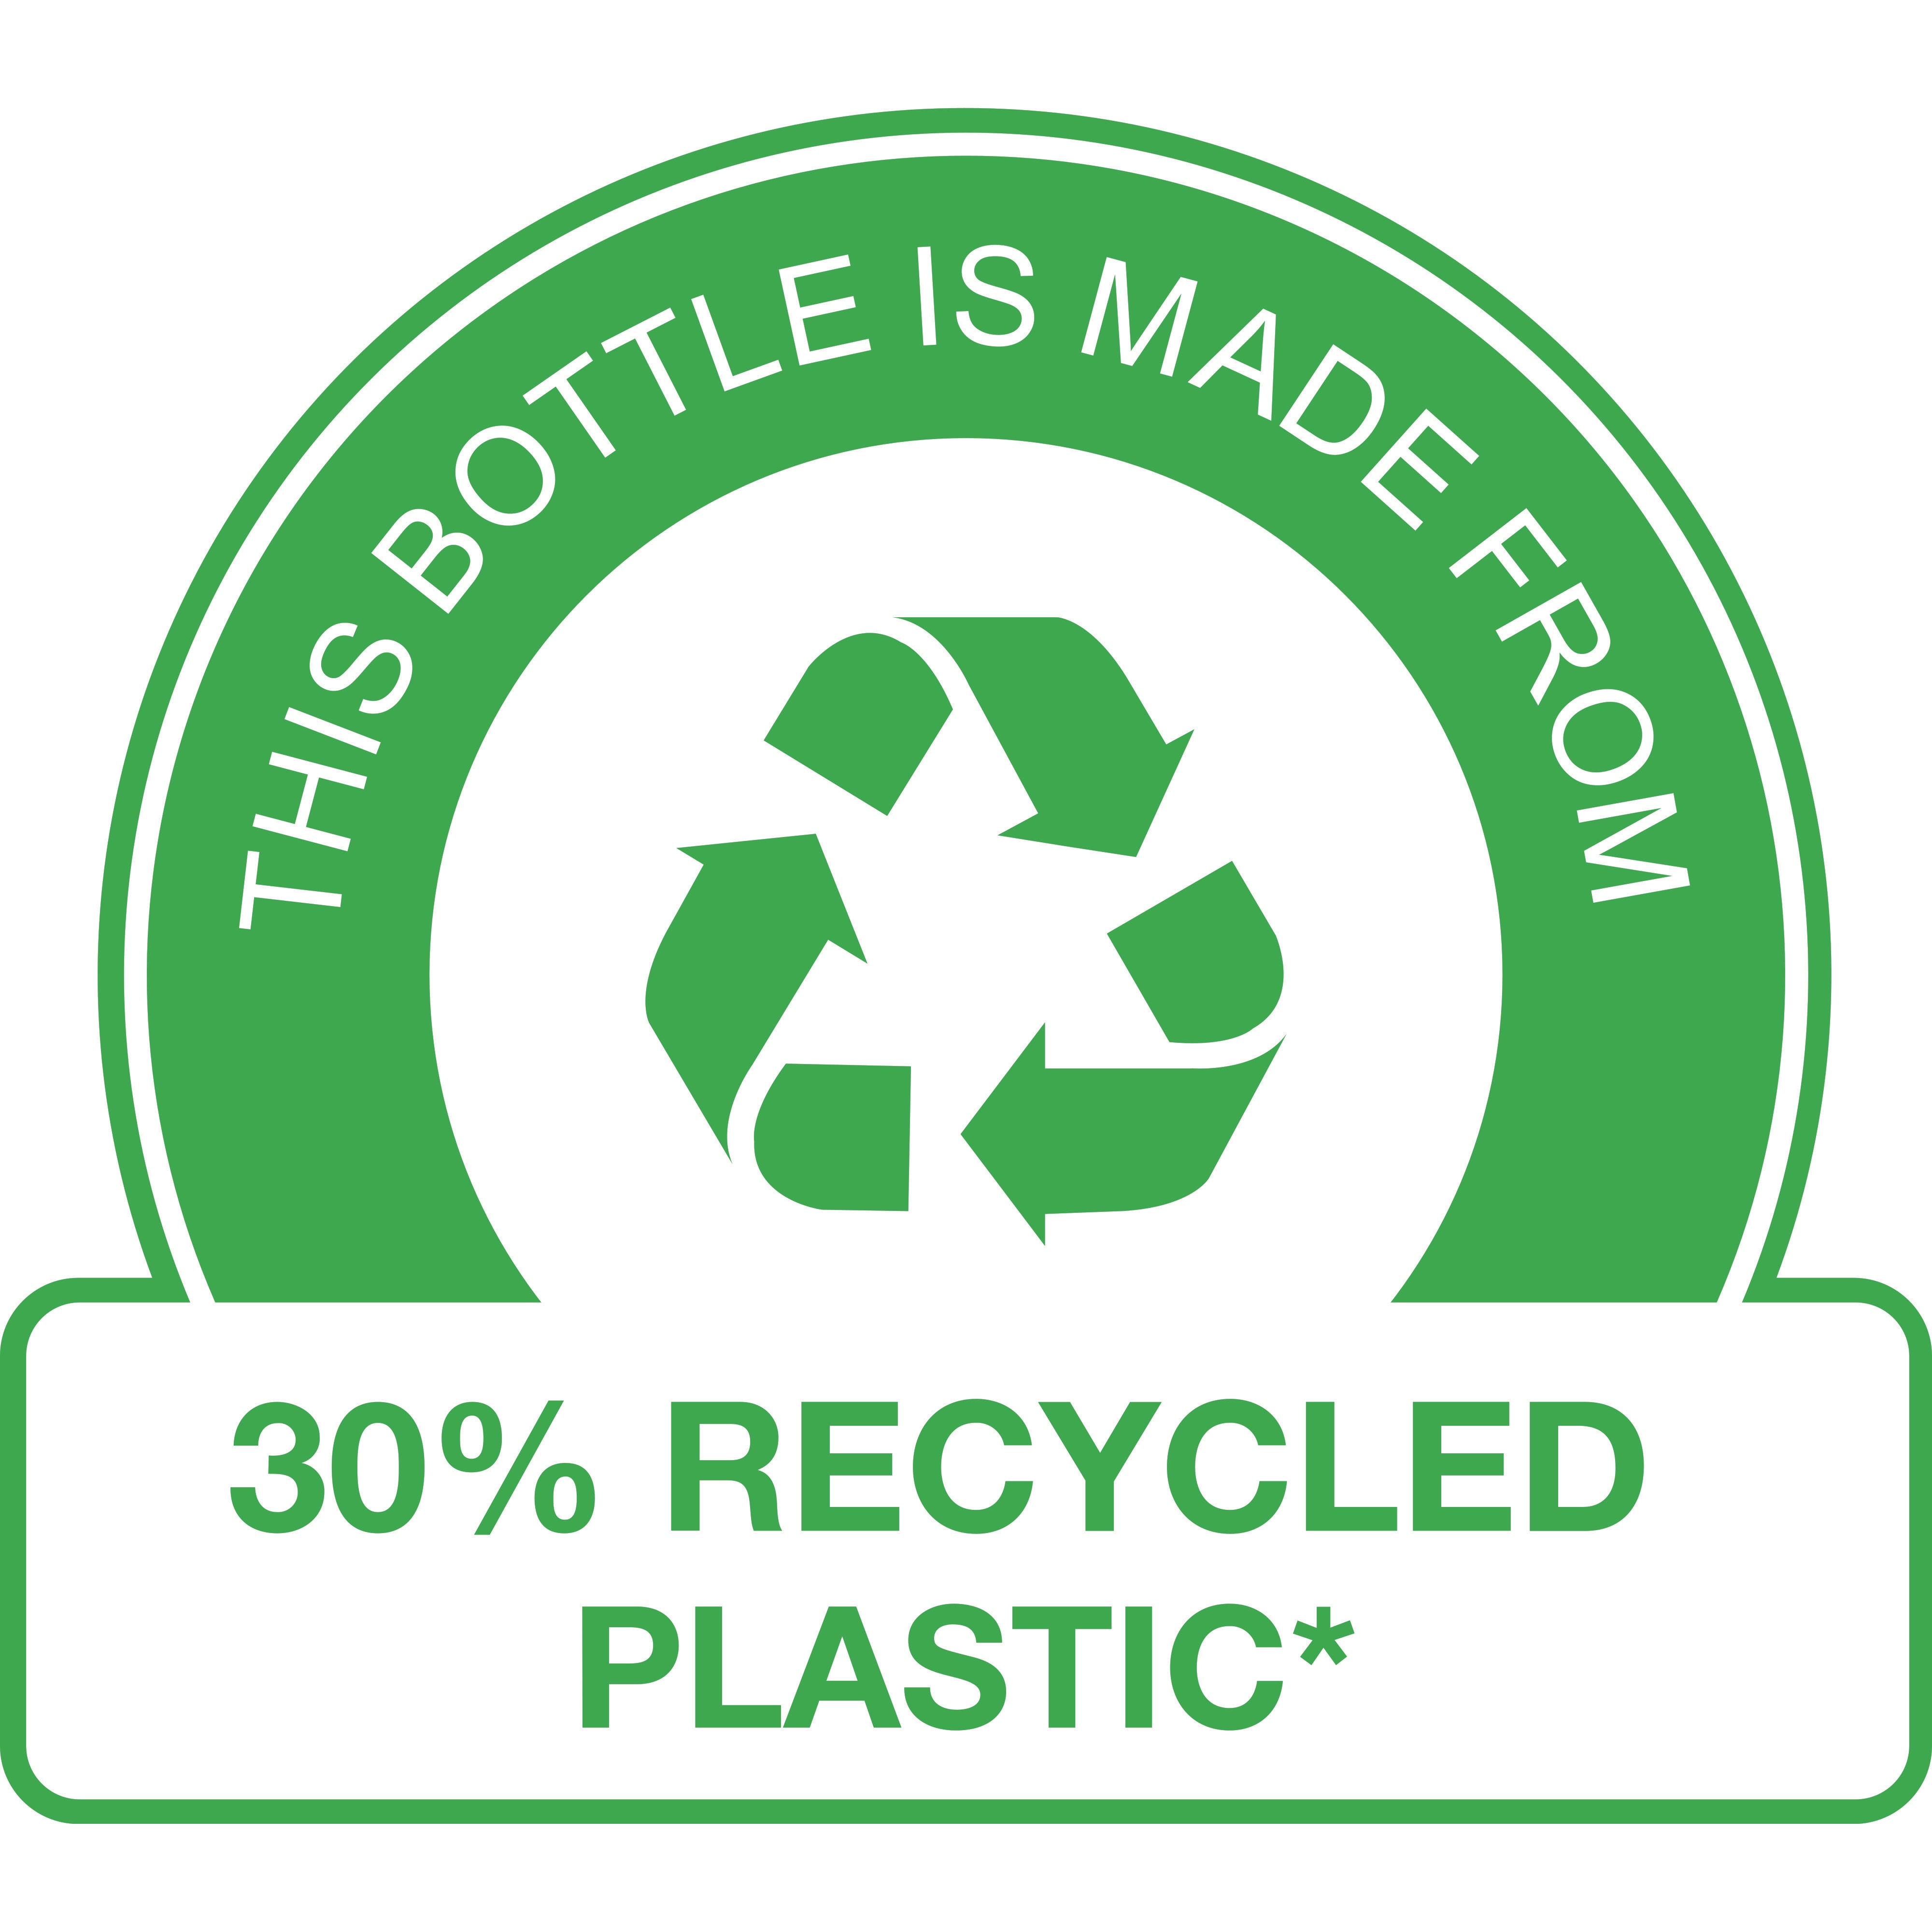 Esta botella está fabricada con un 30 % de plástico reciclado* 

(* no incluye el dosificador)